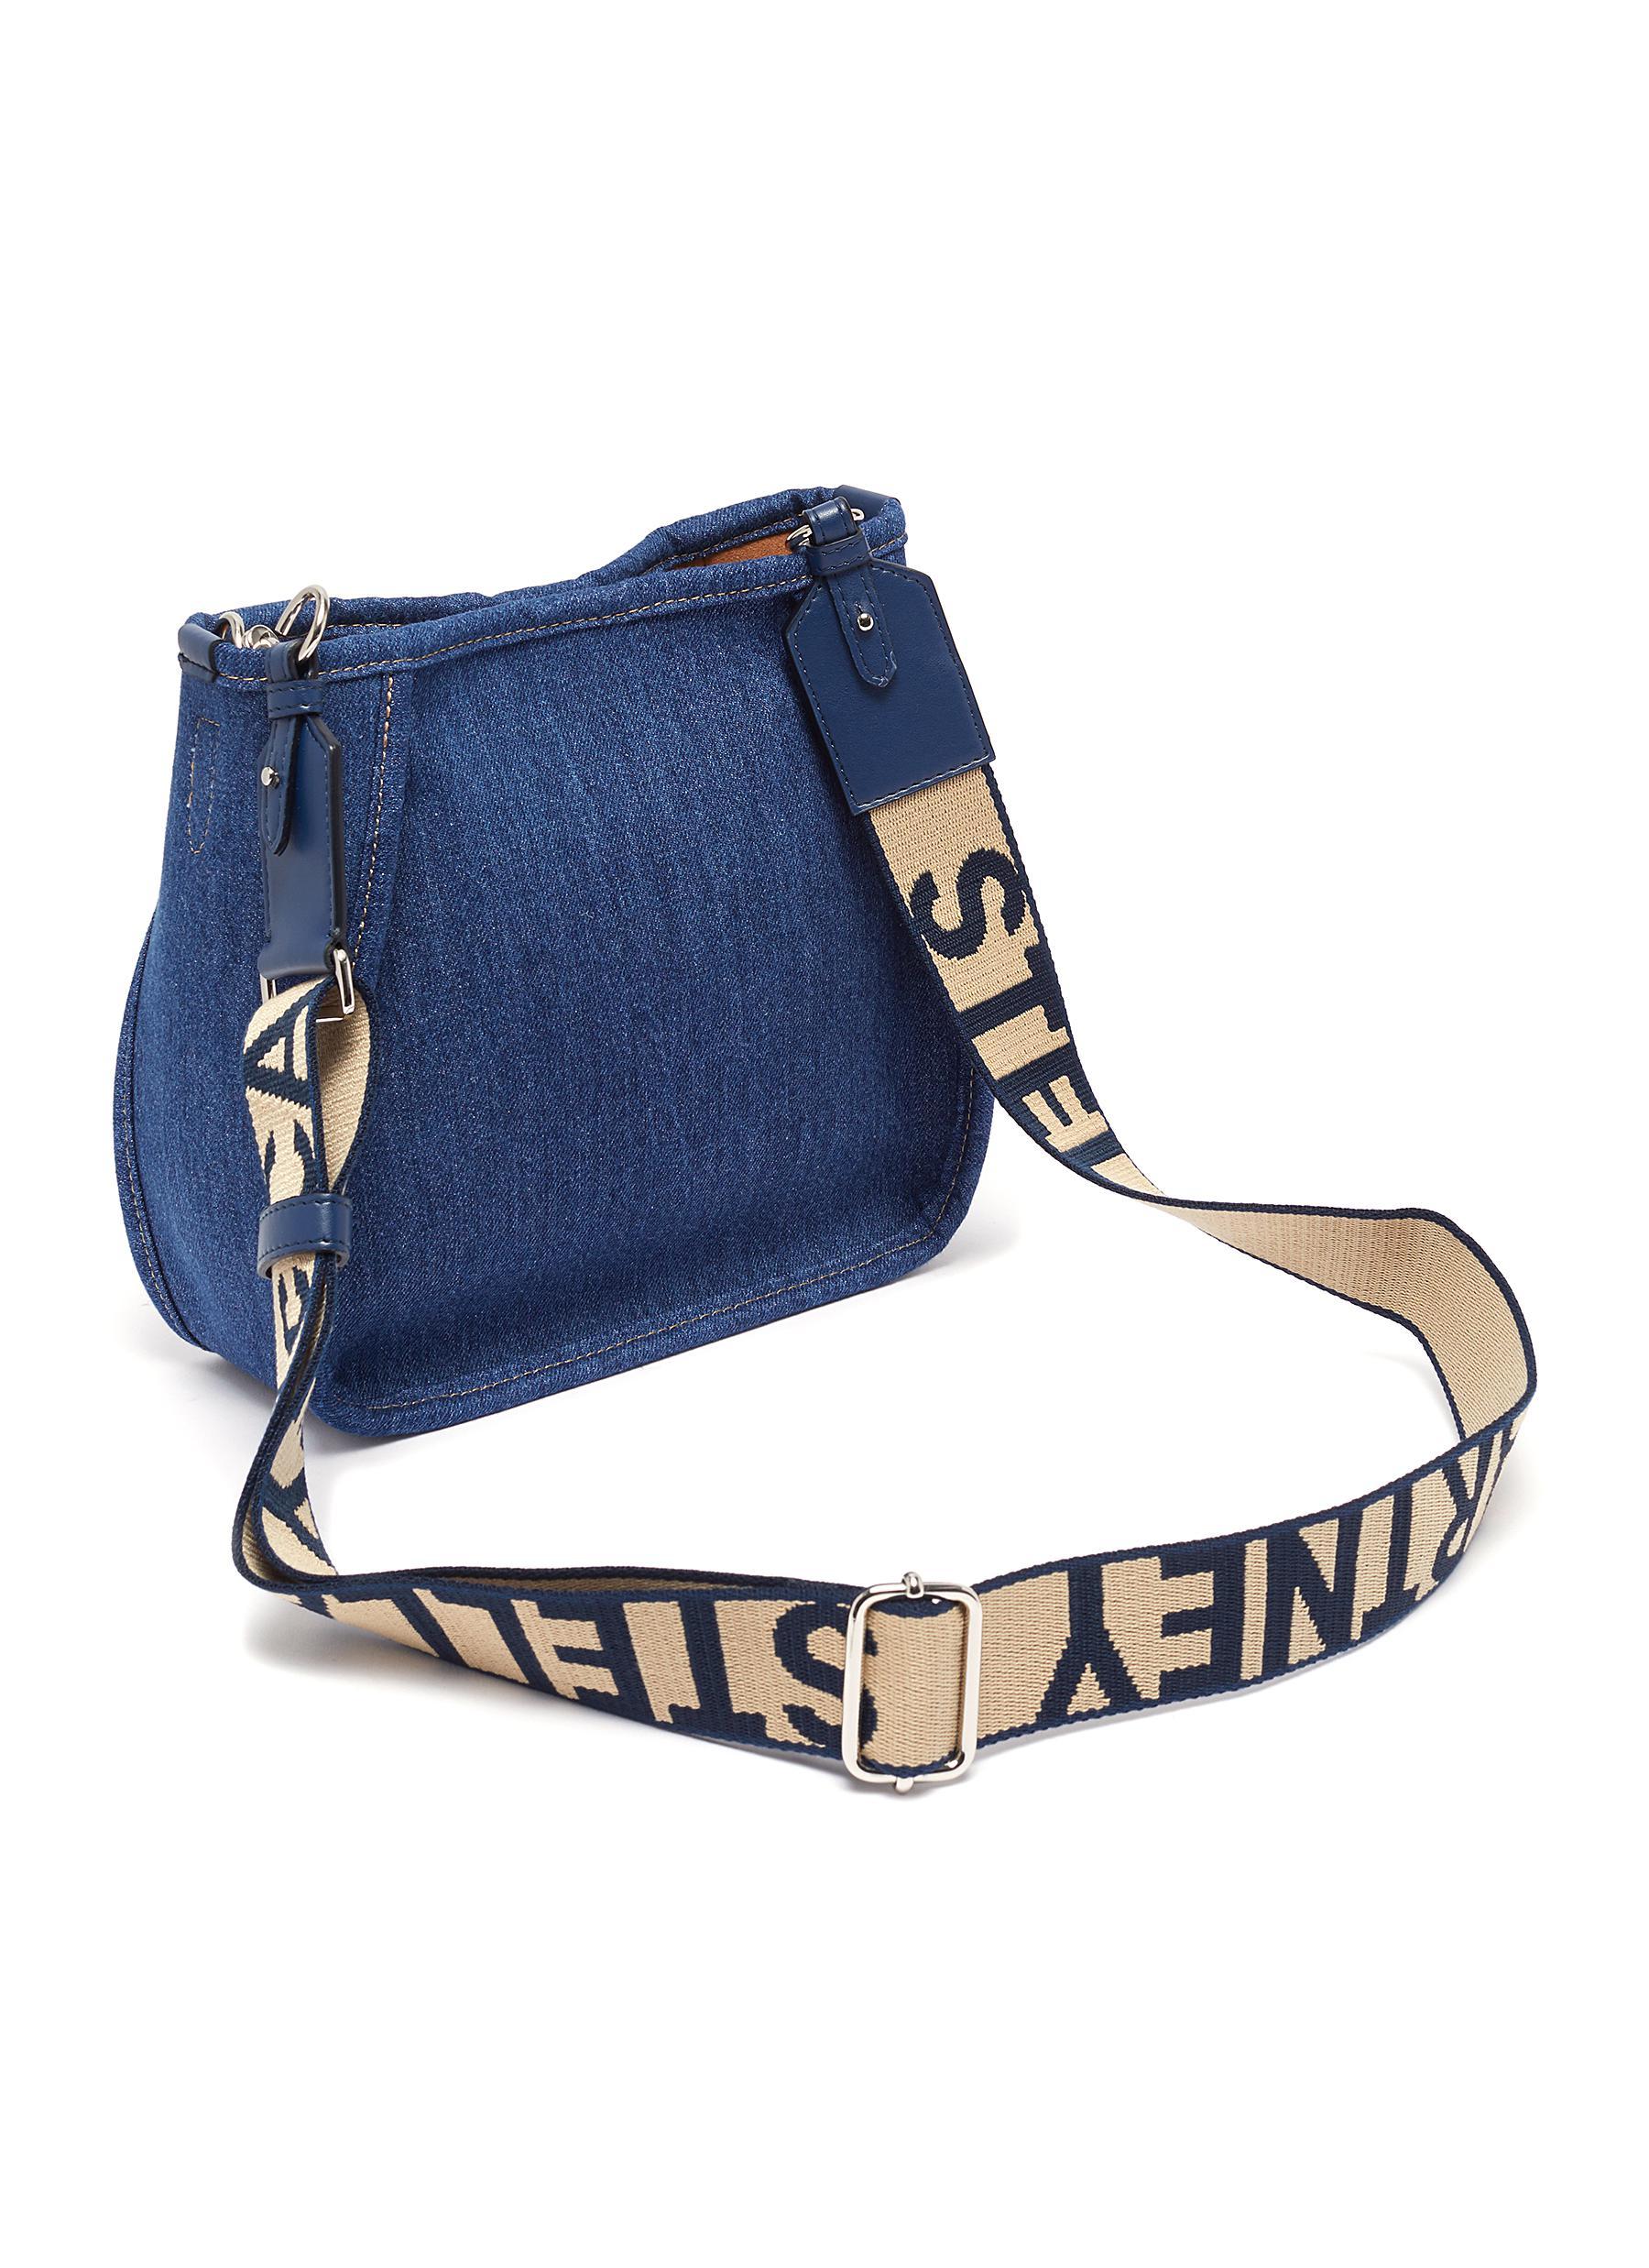 Stella McCartney Mini Eco Denim Crossbody Bag in Blue | Lyst